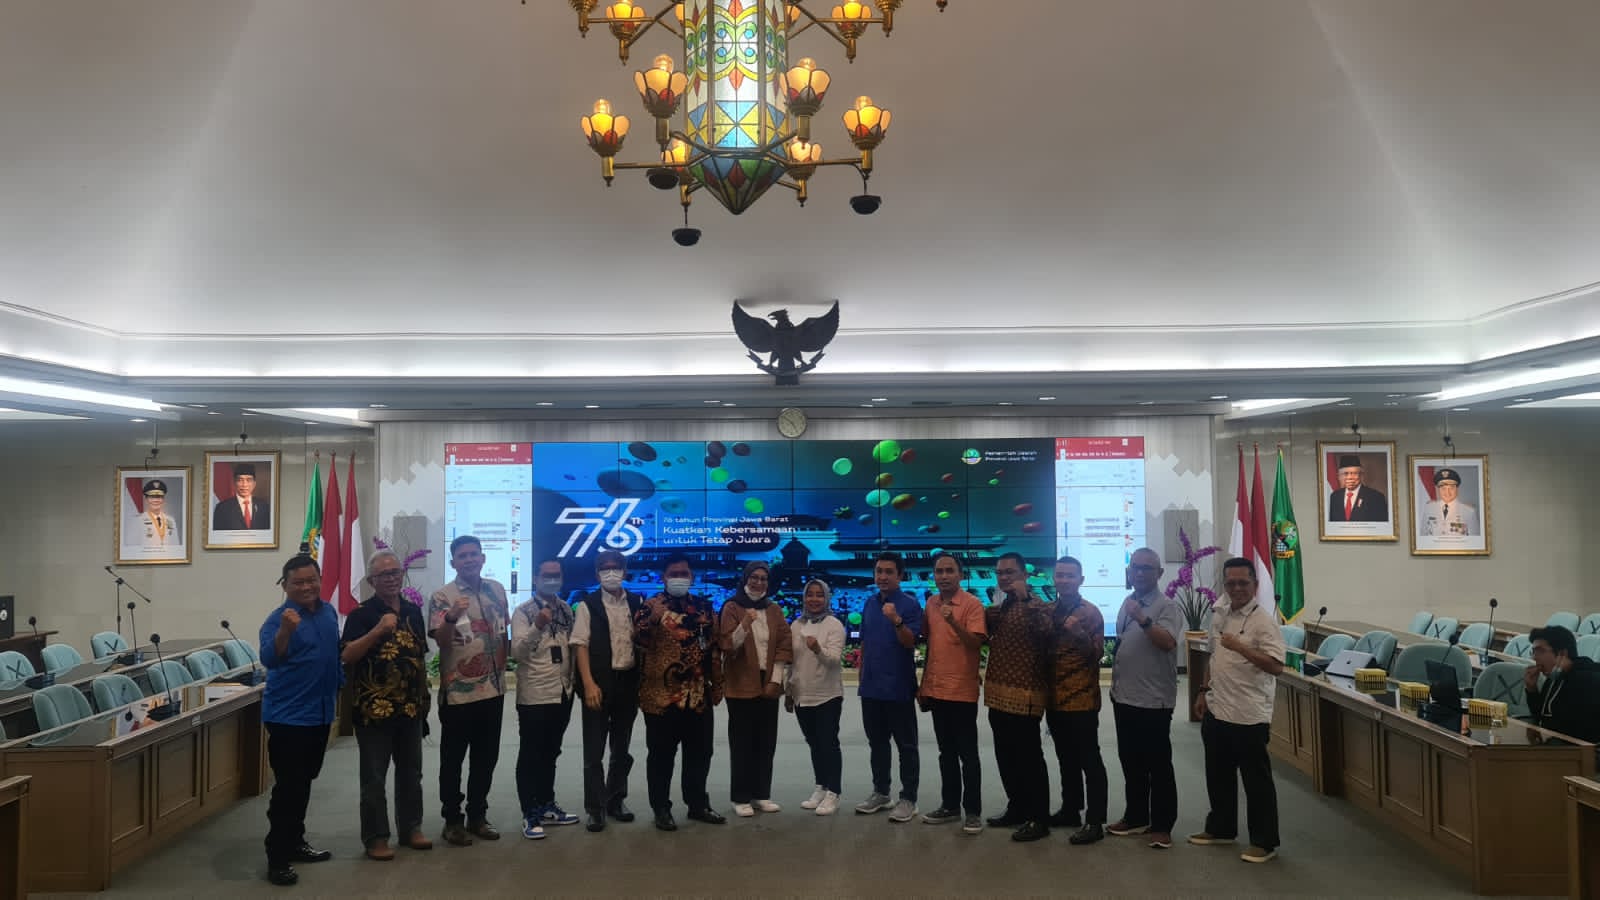 Divisi Pertanian dan Ketahanan Pangan KPED Jabar menggelar seminar bertajuk "Strategi Rantai Pasok Pangan di Jawa Barat" secara hybrid.